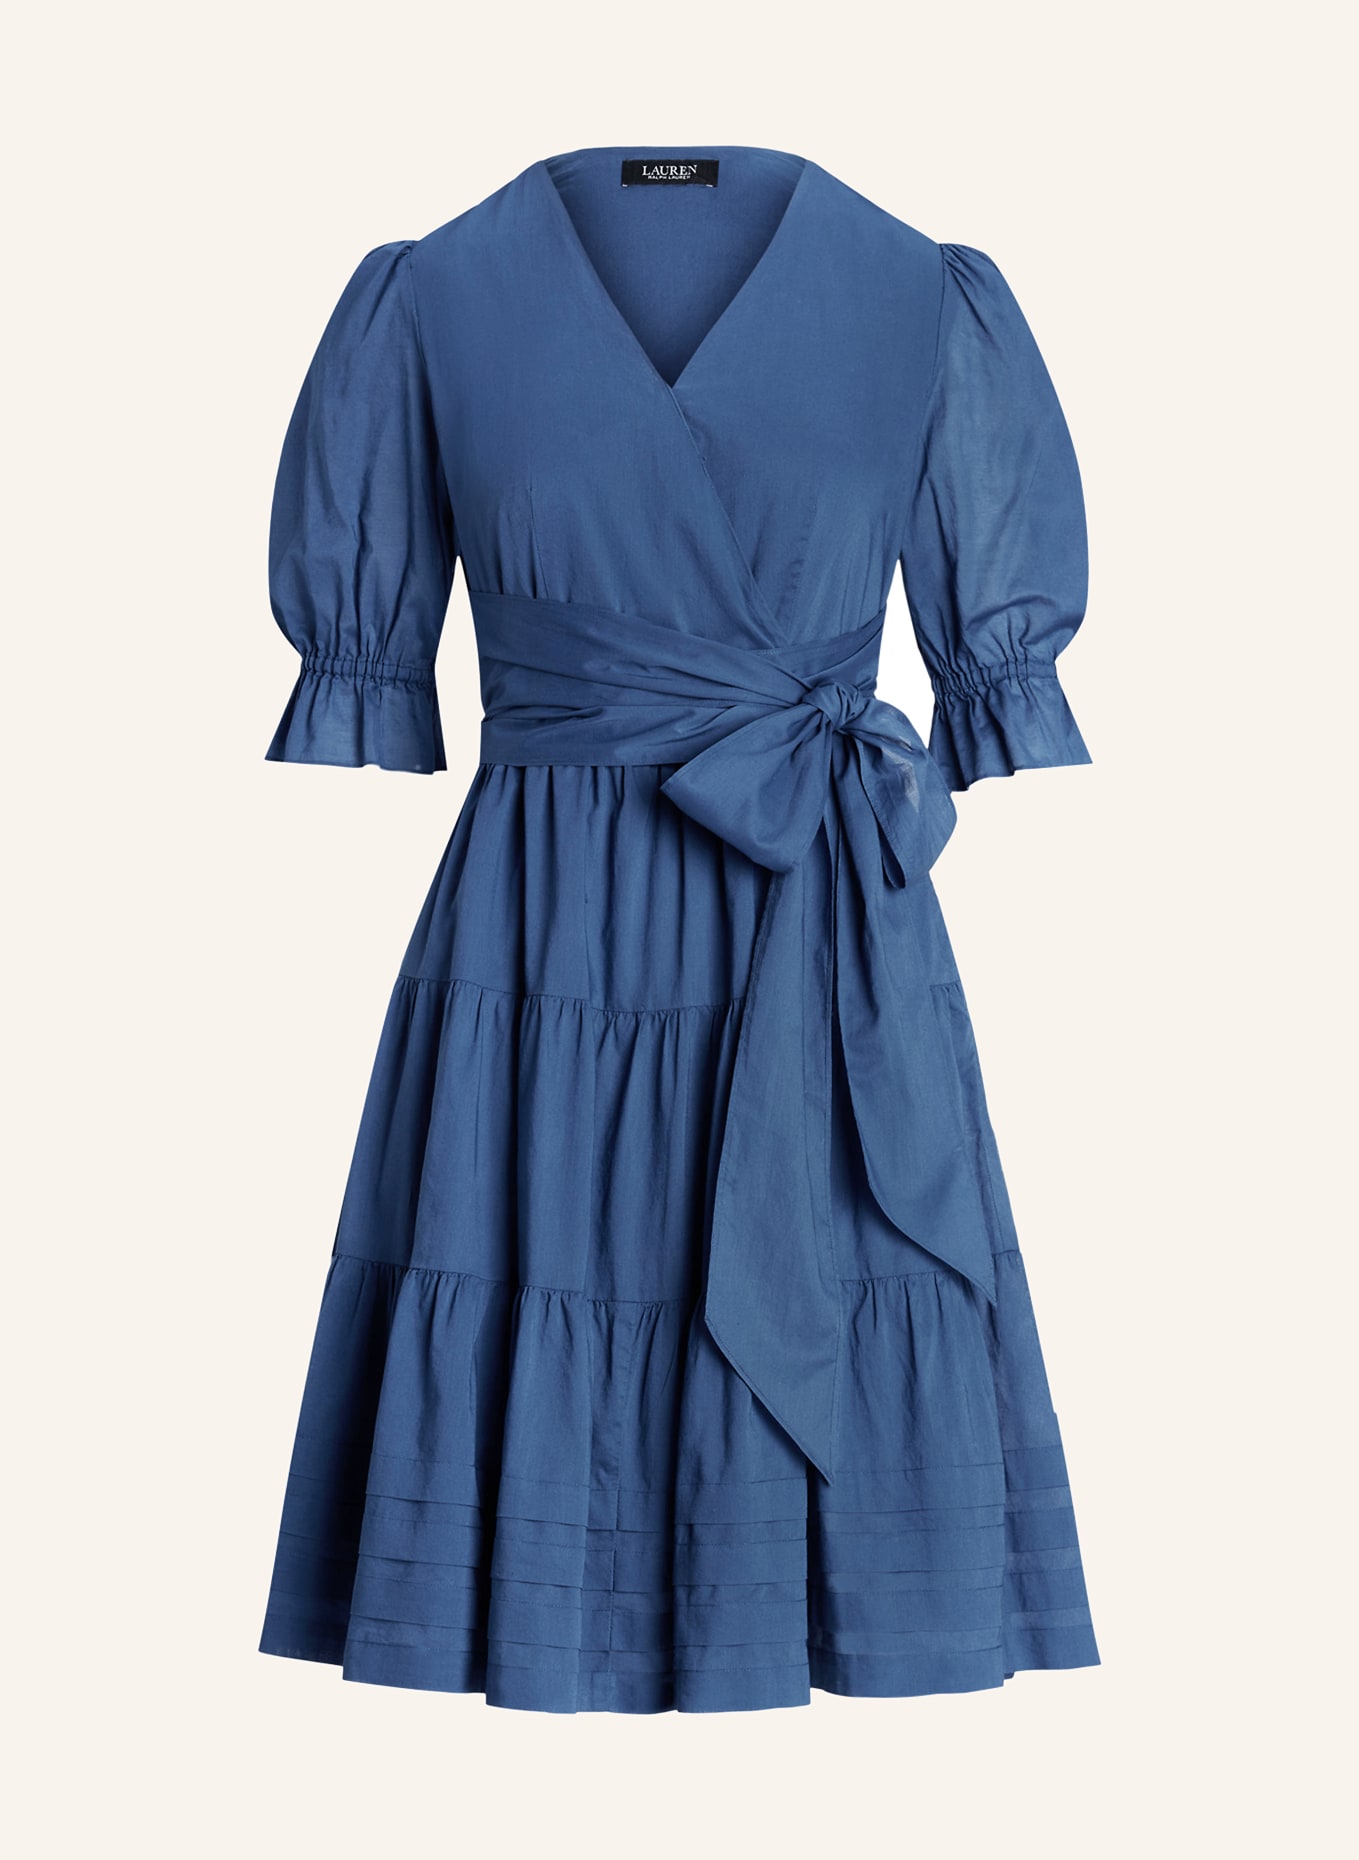 LAUREN RALPH LAUREN Kleid in Wickeloptik, Farbe: BLAU (Bild 1)